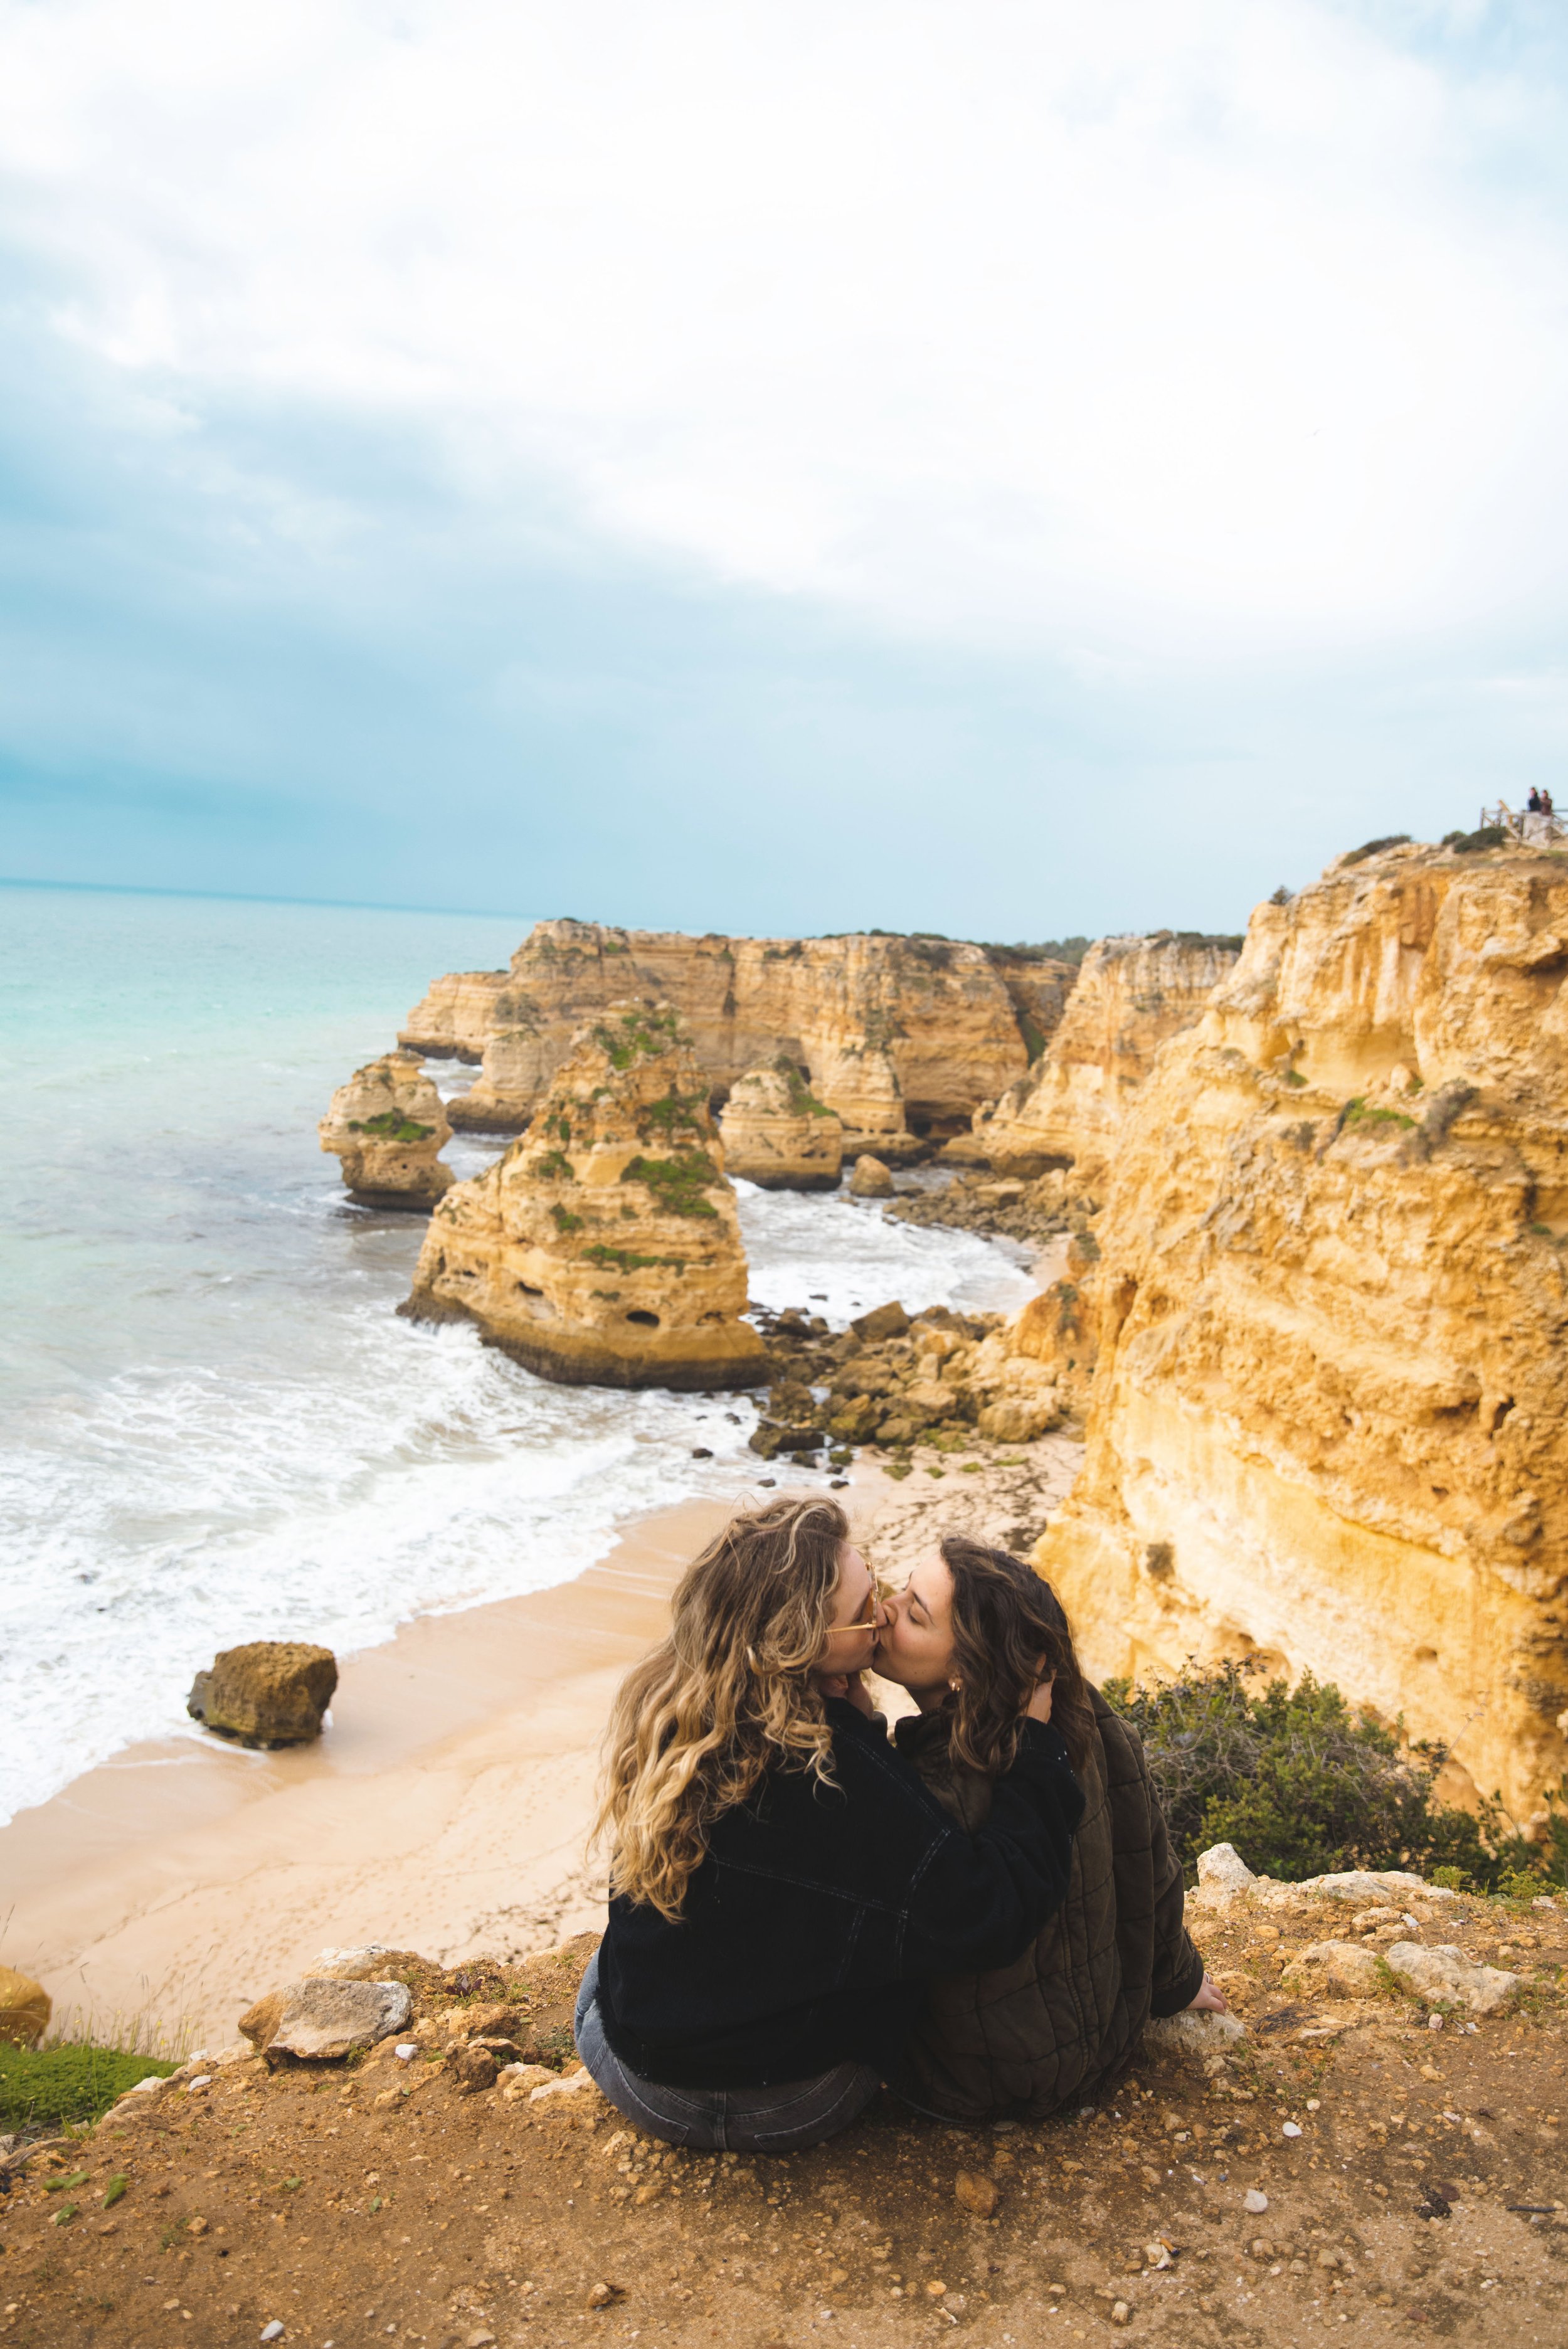 The Algarve Region ‹ Algarve Guide